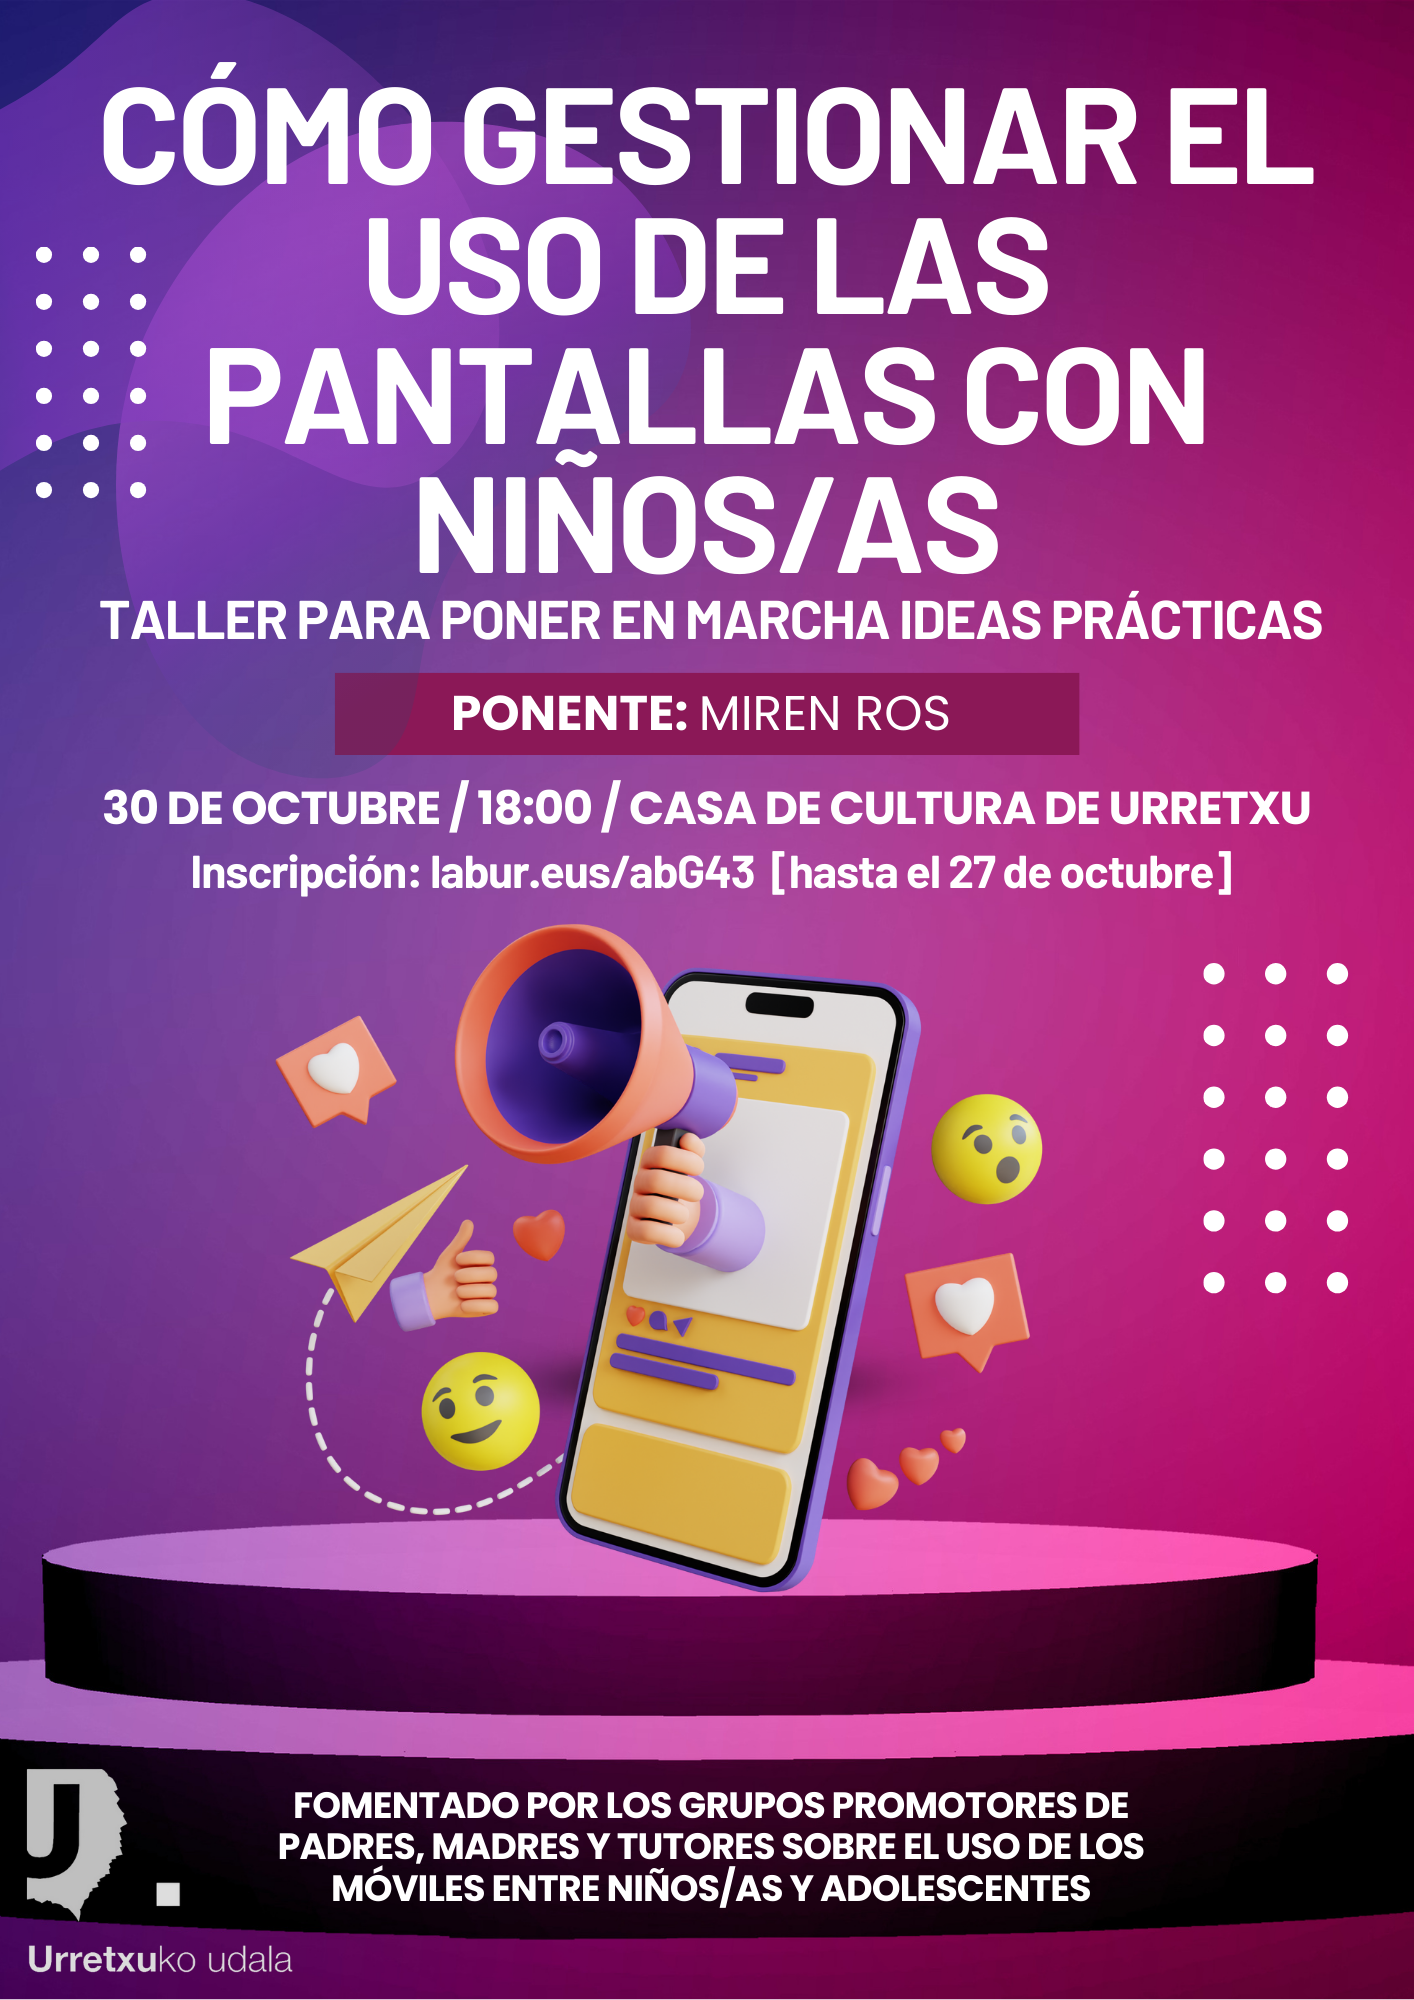 La experta Miren Ros dirigirá un taller sobre la gestión de las pantallas con los niños/as, el 30 de octubre, en la casa de cultura de Urretxu